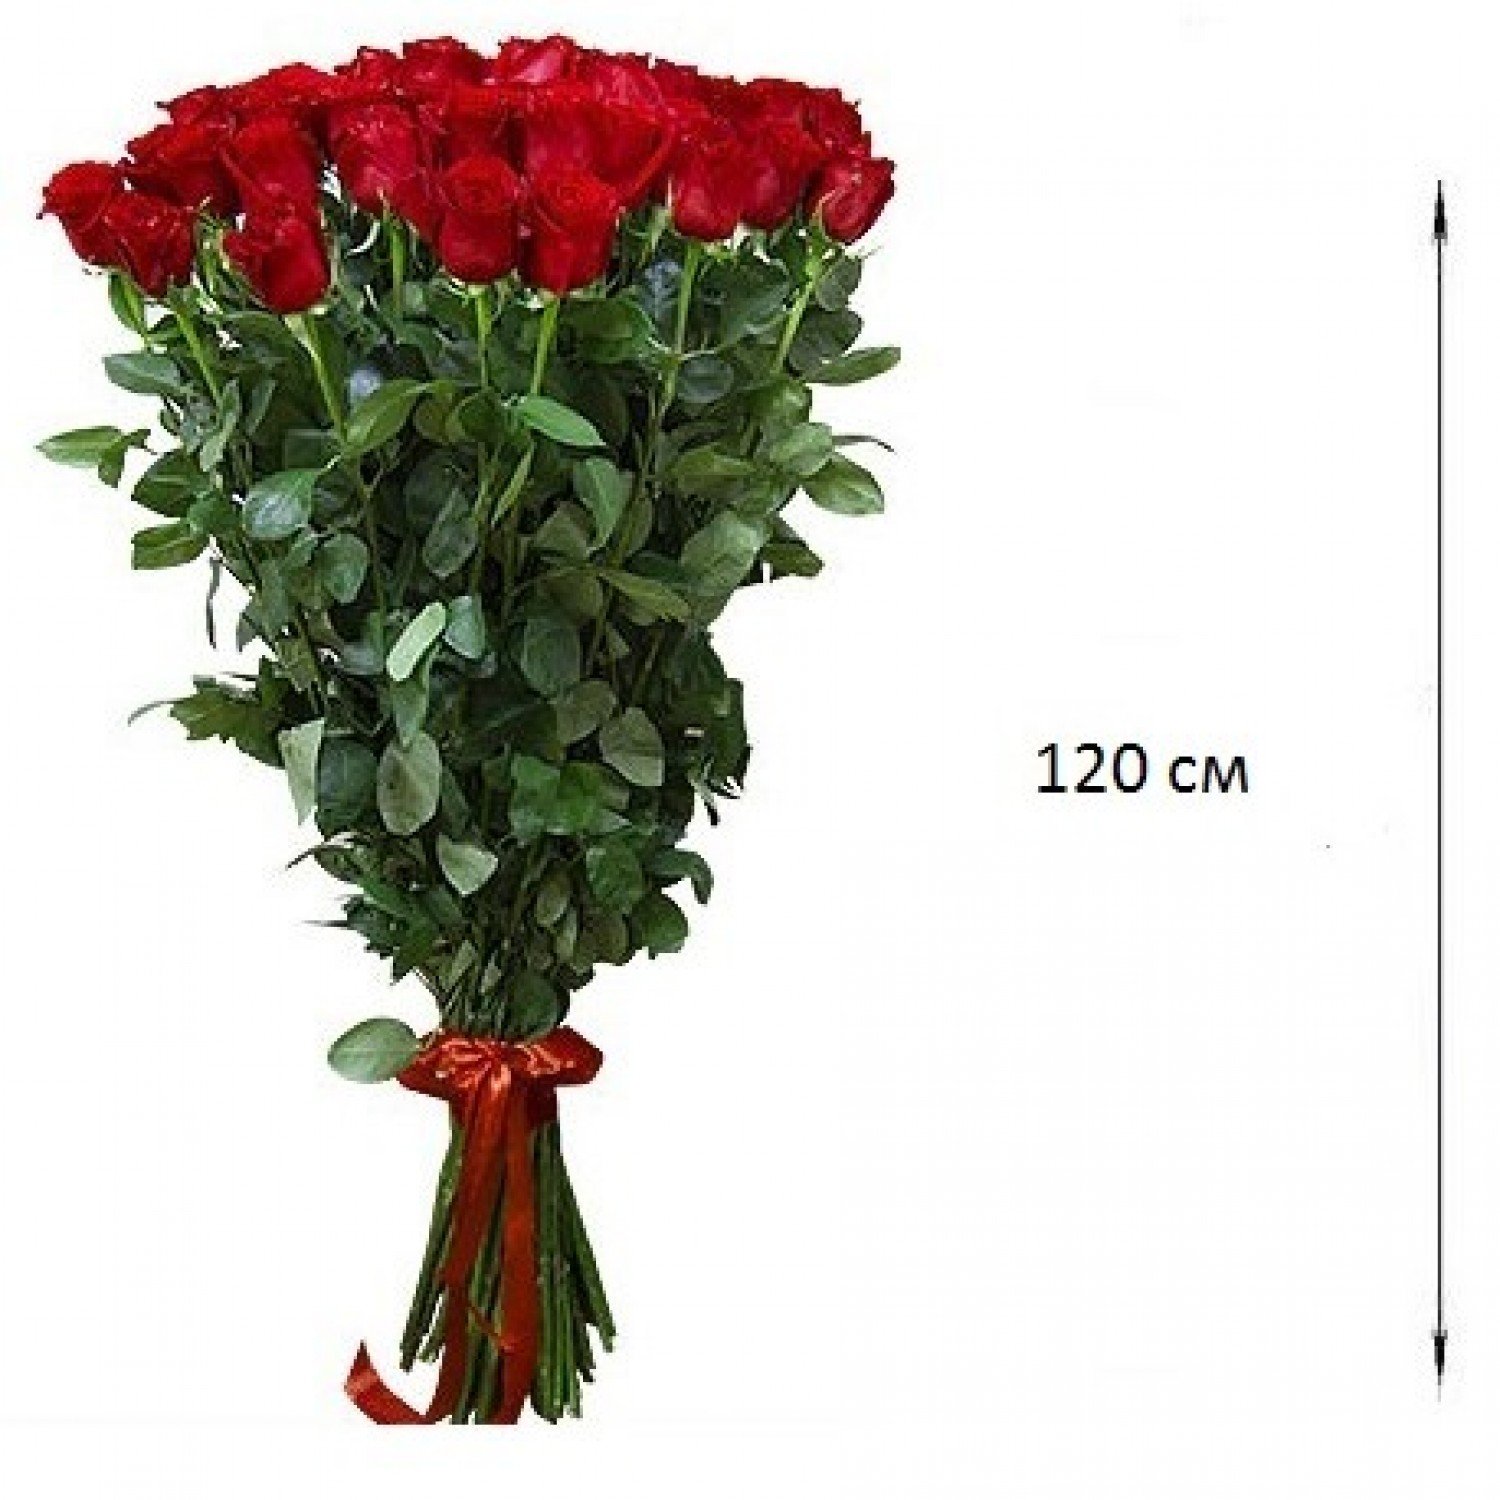 Купить розы в новосибирске недорого. Розы 120 см.